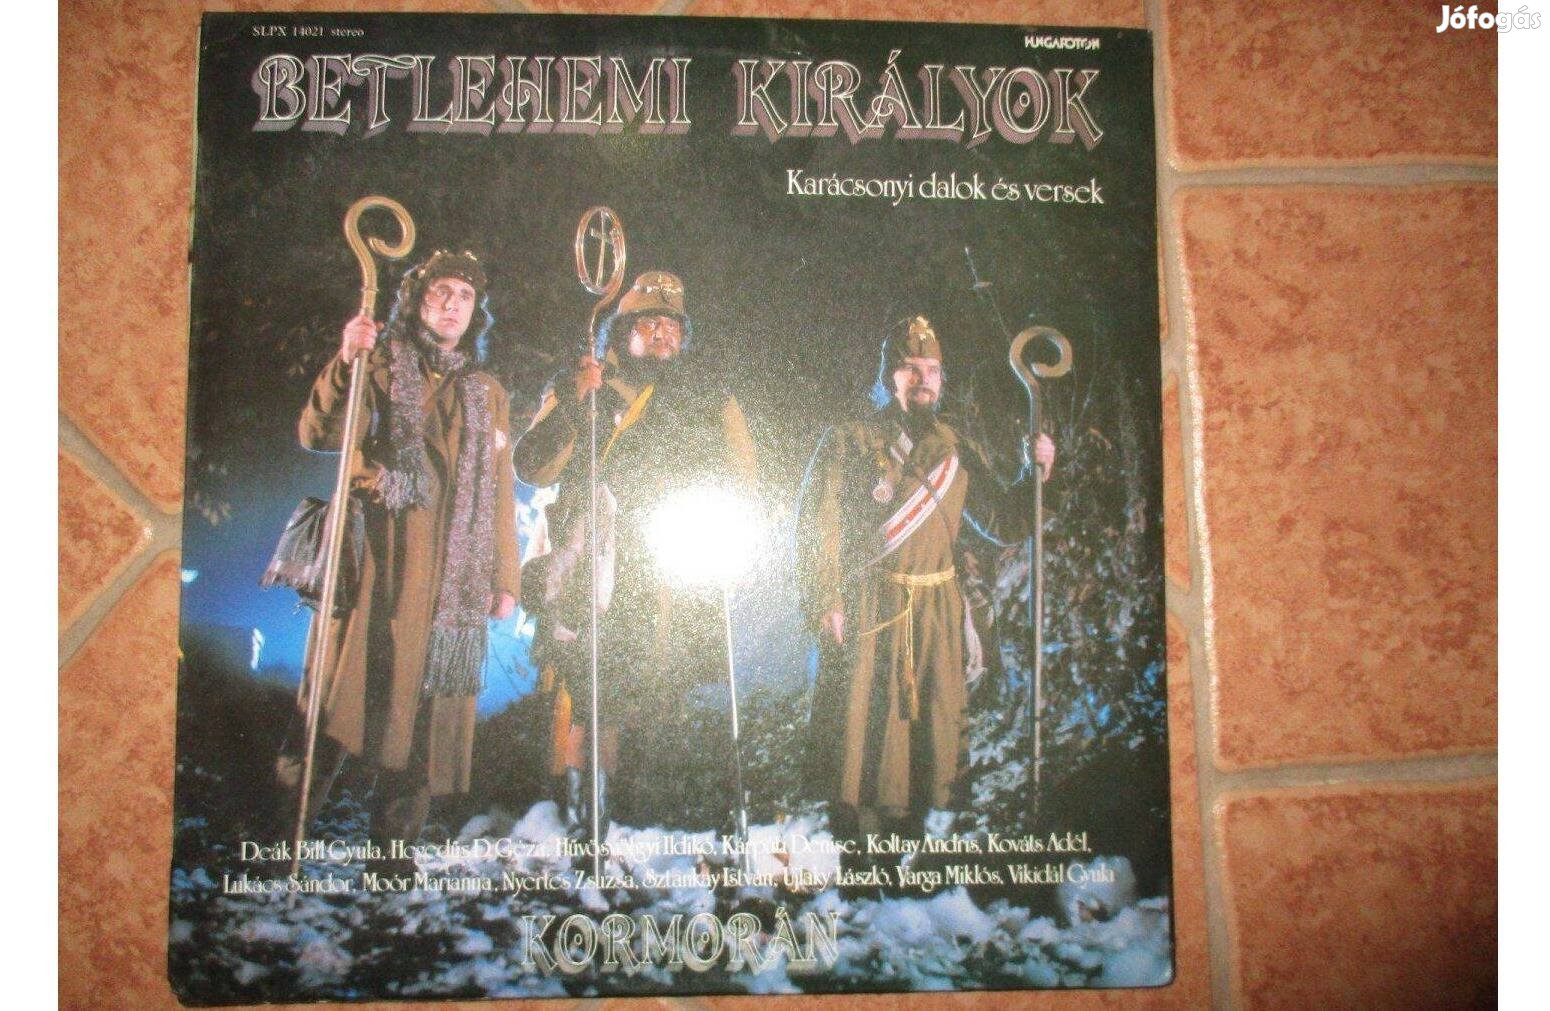 Betlehemi királyok bakelit hanglemez eladó